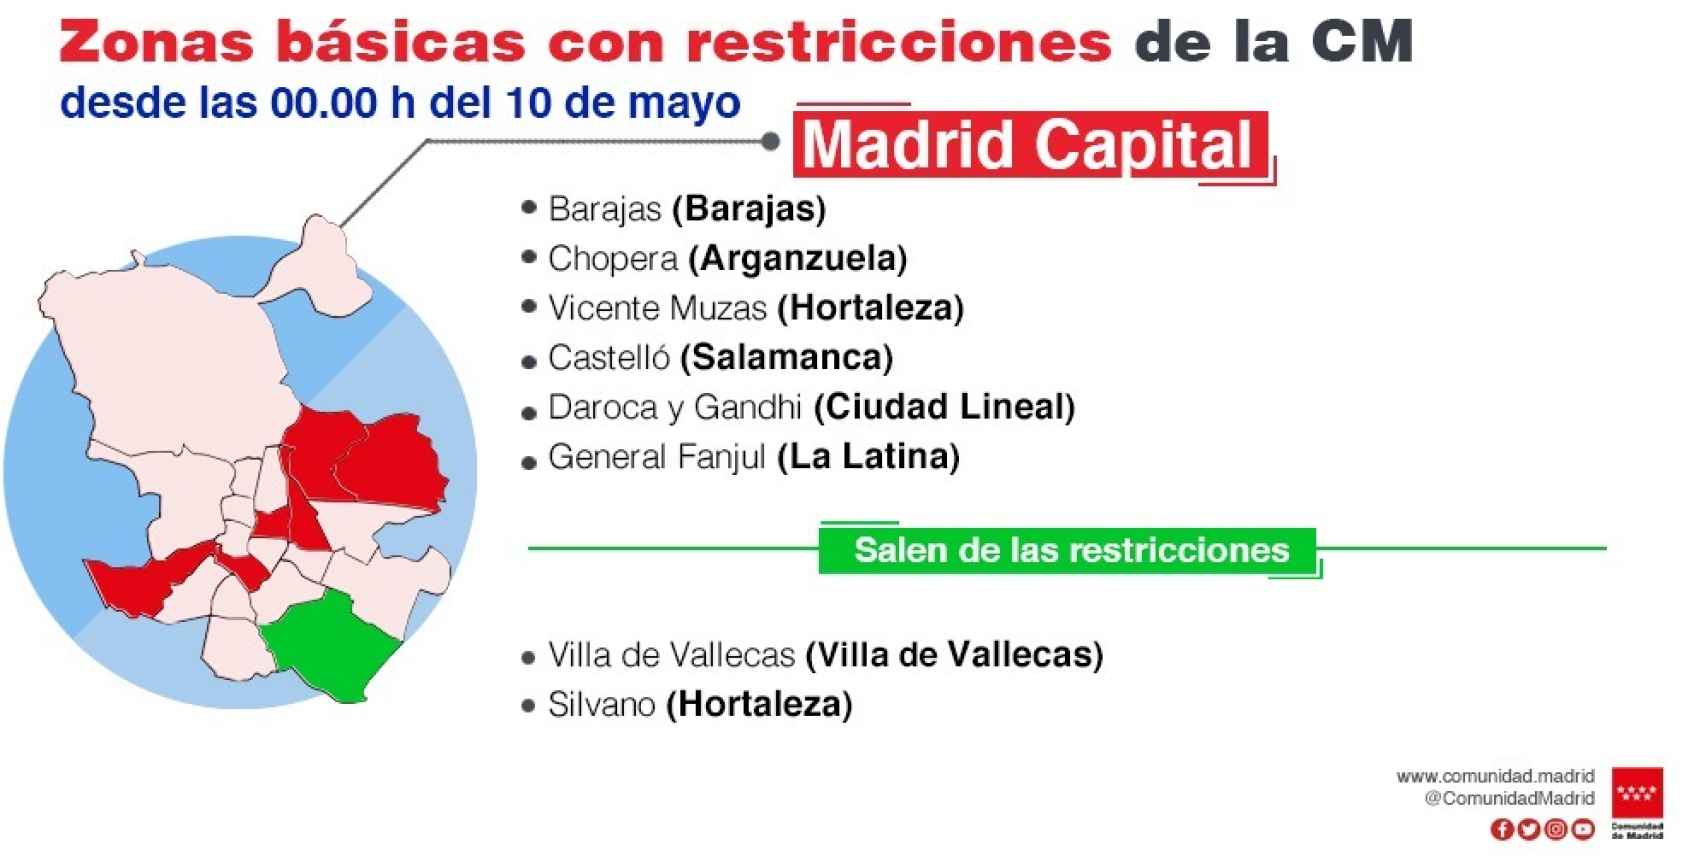 Zonas básicas con restricciones en Madrid capital